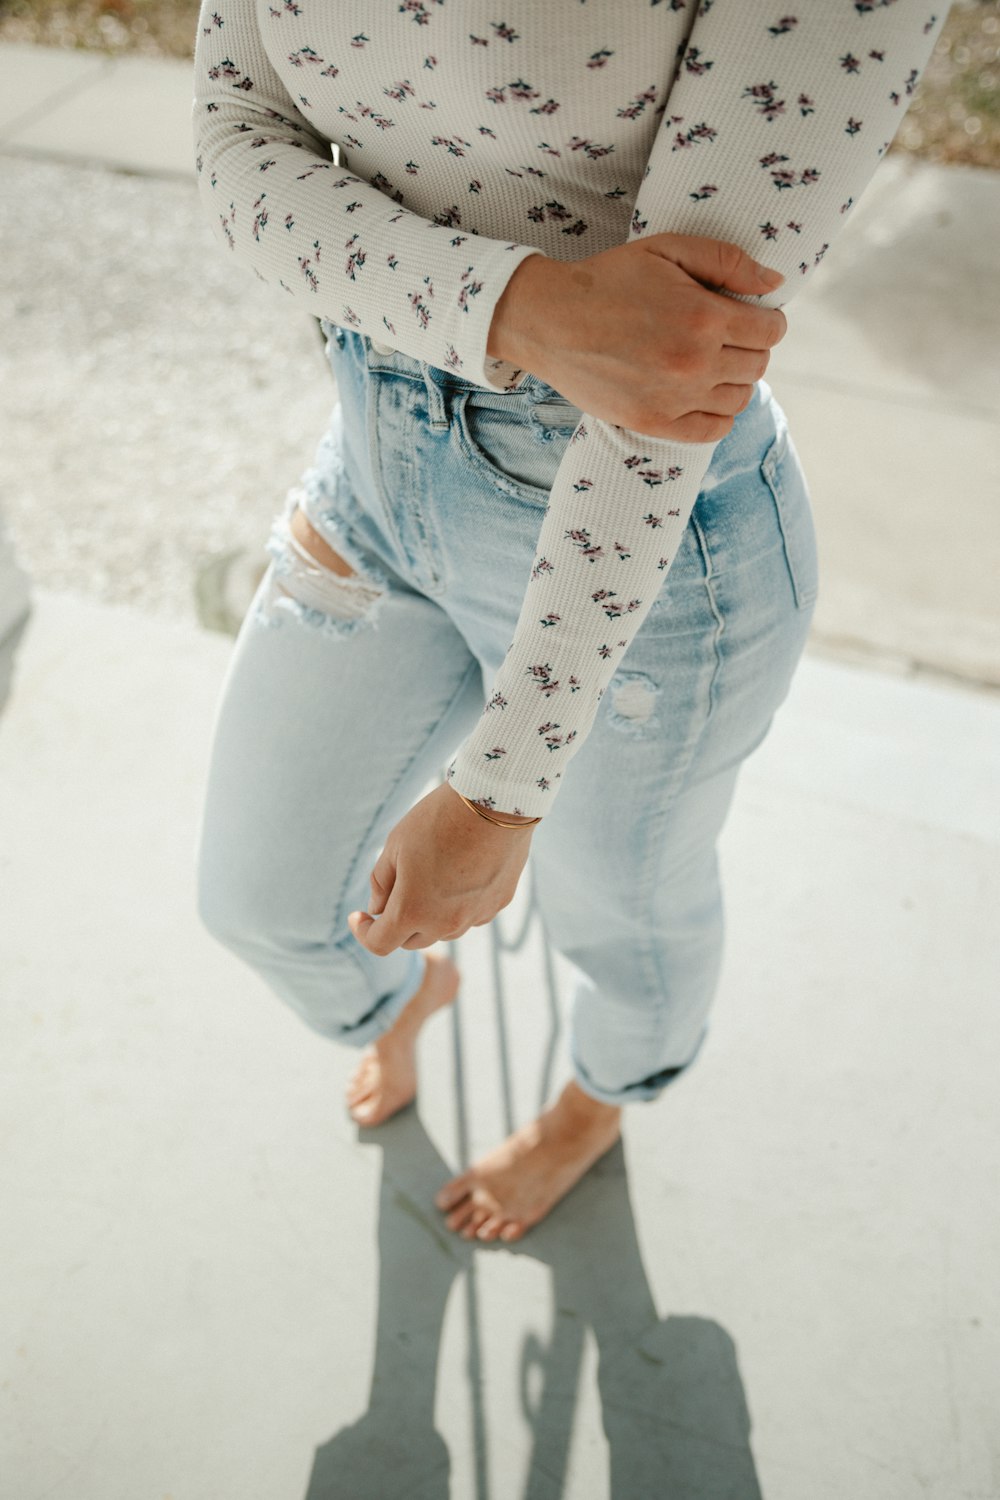 Una mujer parada en una acera con las manos en los bolsillos